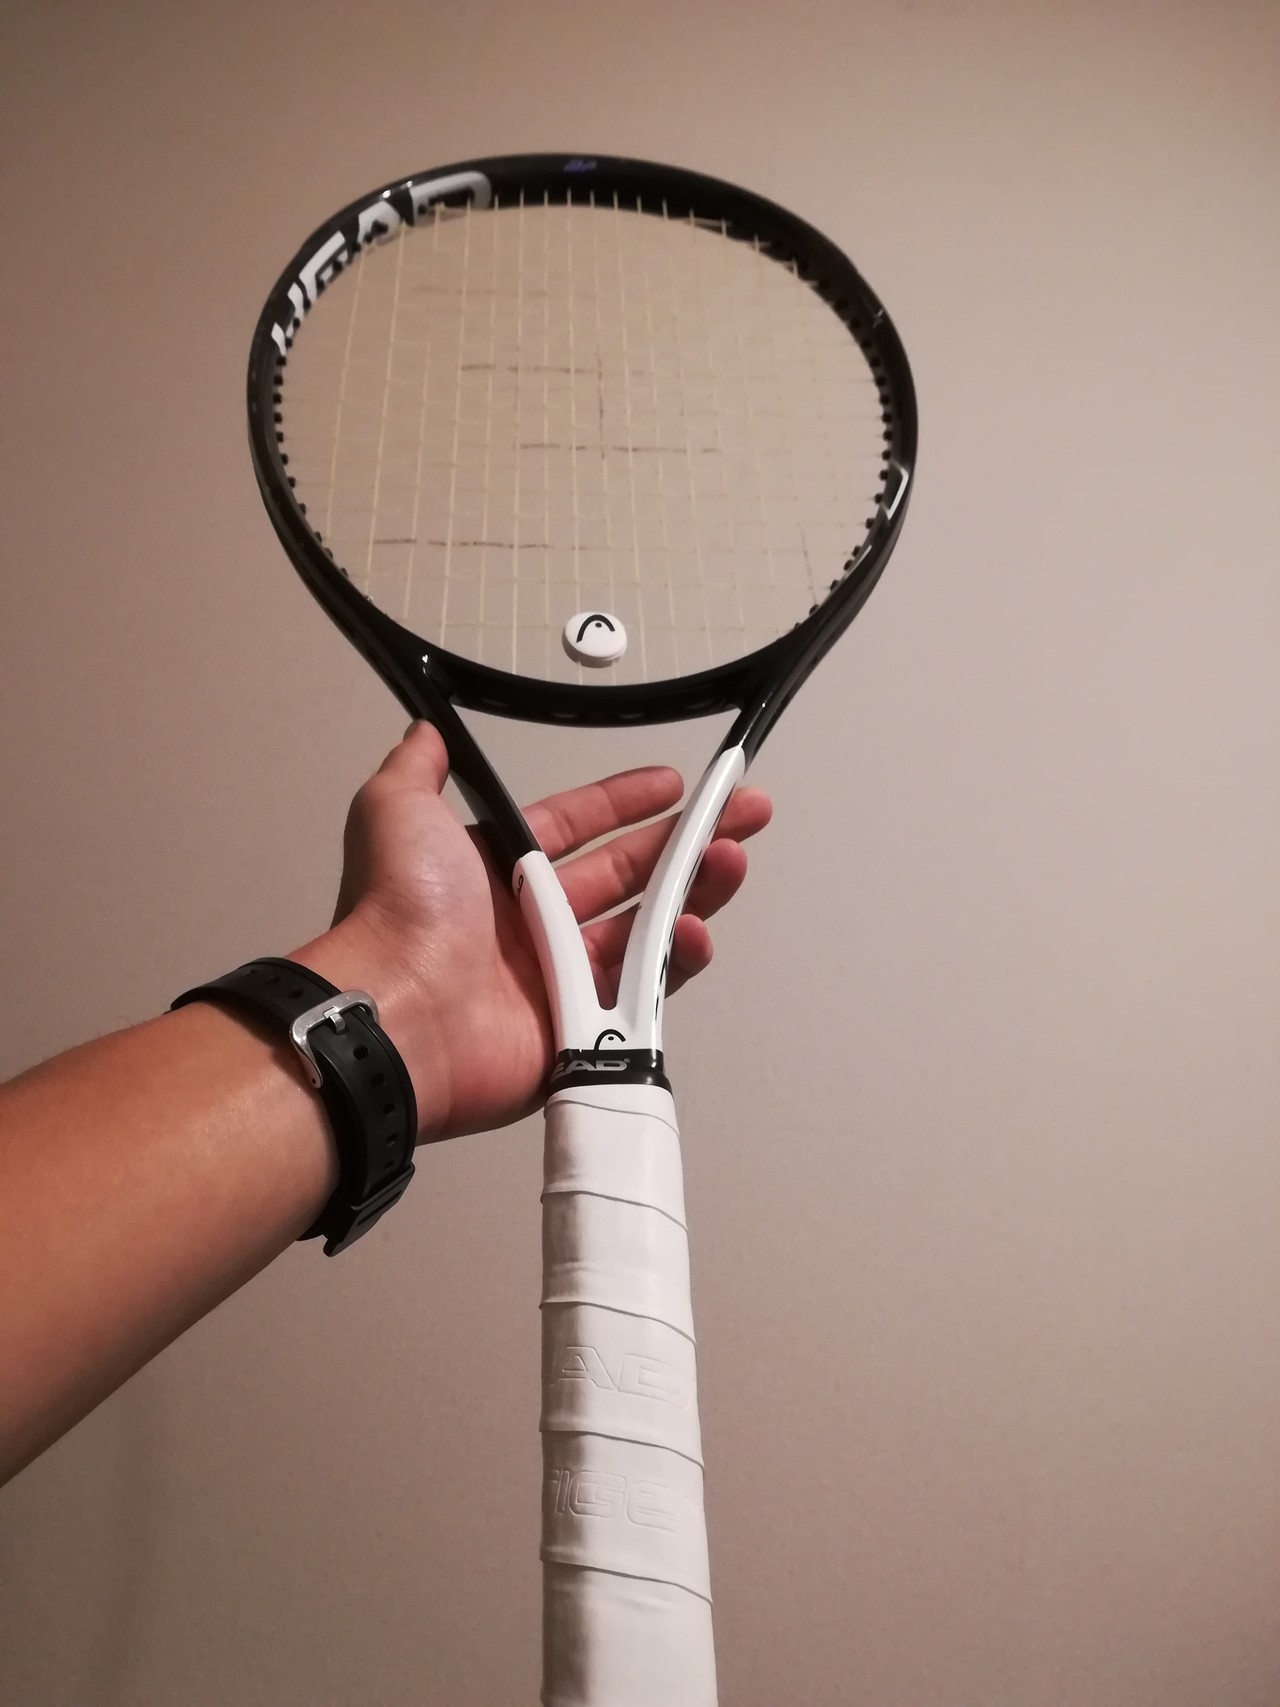 テニス プロストックラケット購入 Yamaguchi30 Note